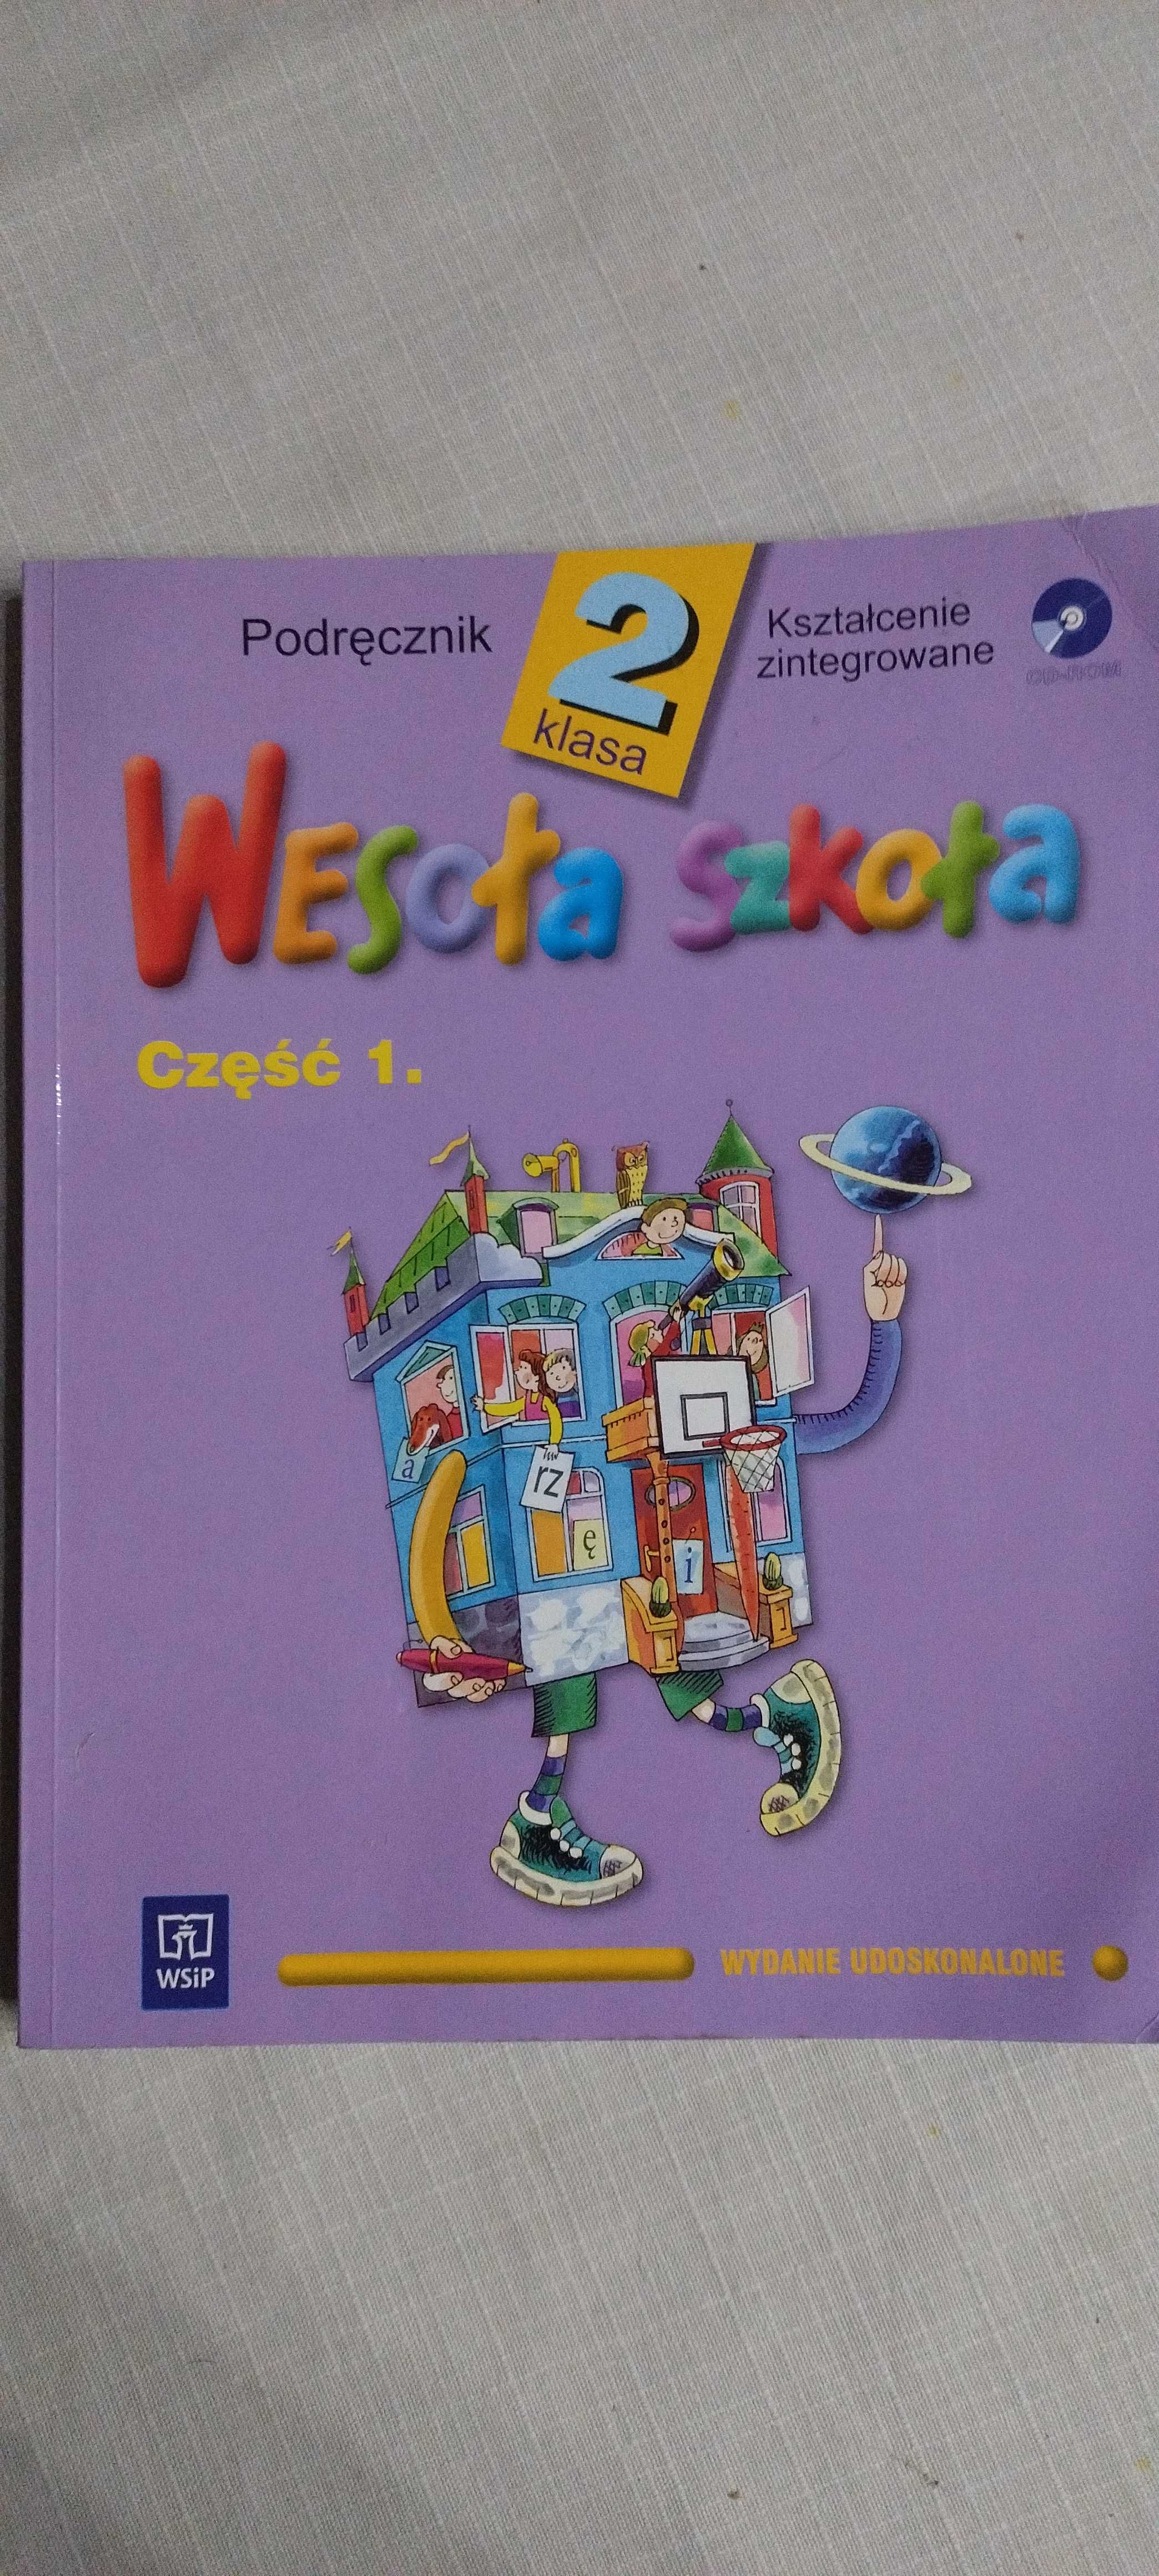 Wesoła szkoła Podręcznik Kształcenie zintegrowane Klasa 2 Część 1.